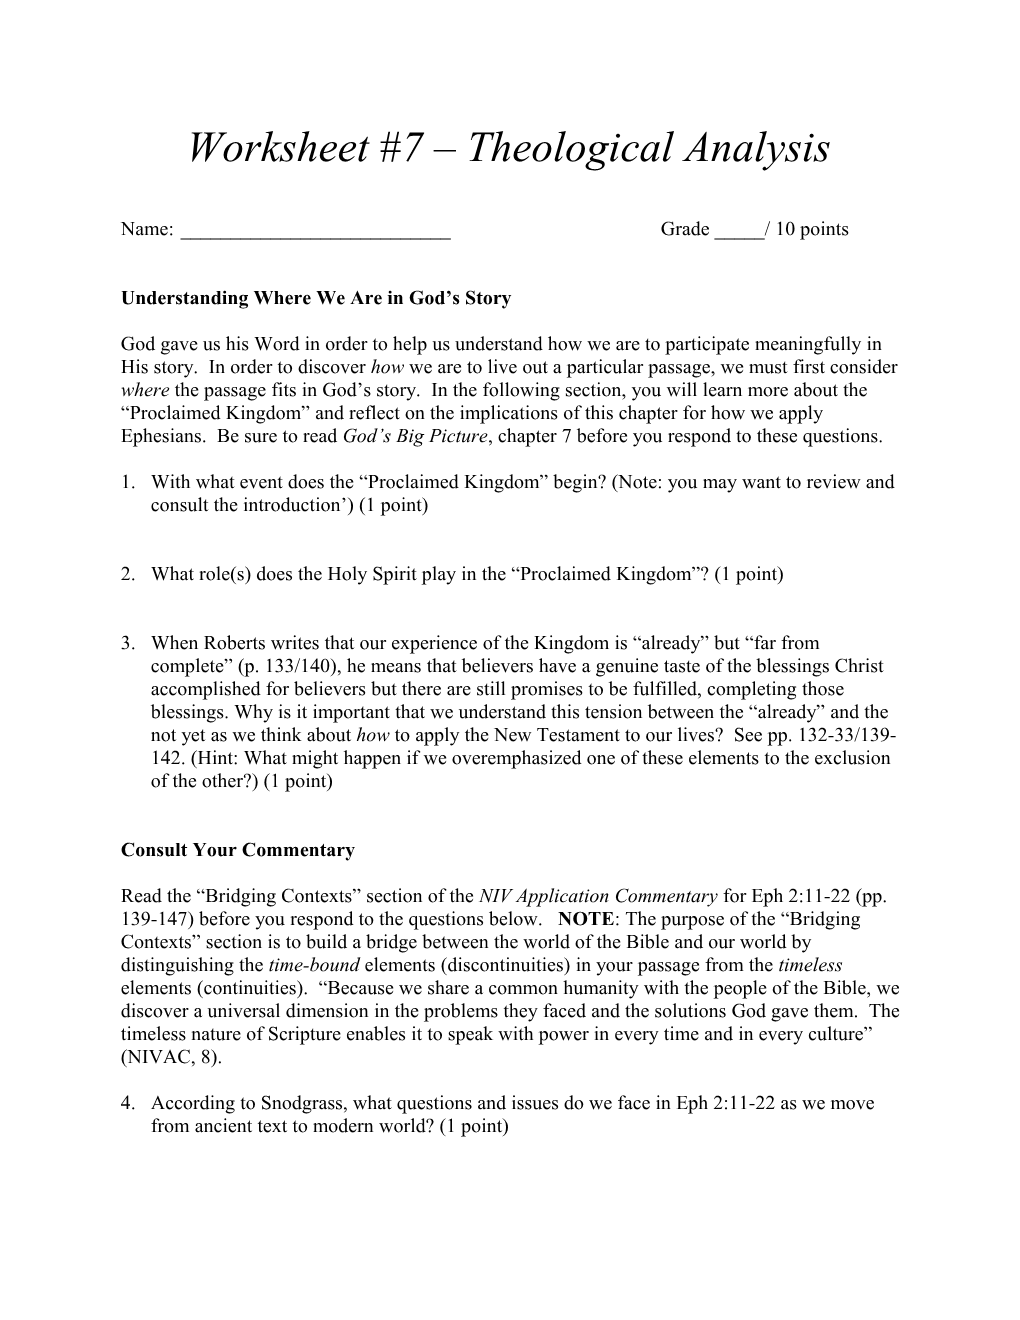 Worksheet #7 Theological Analysis